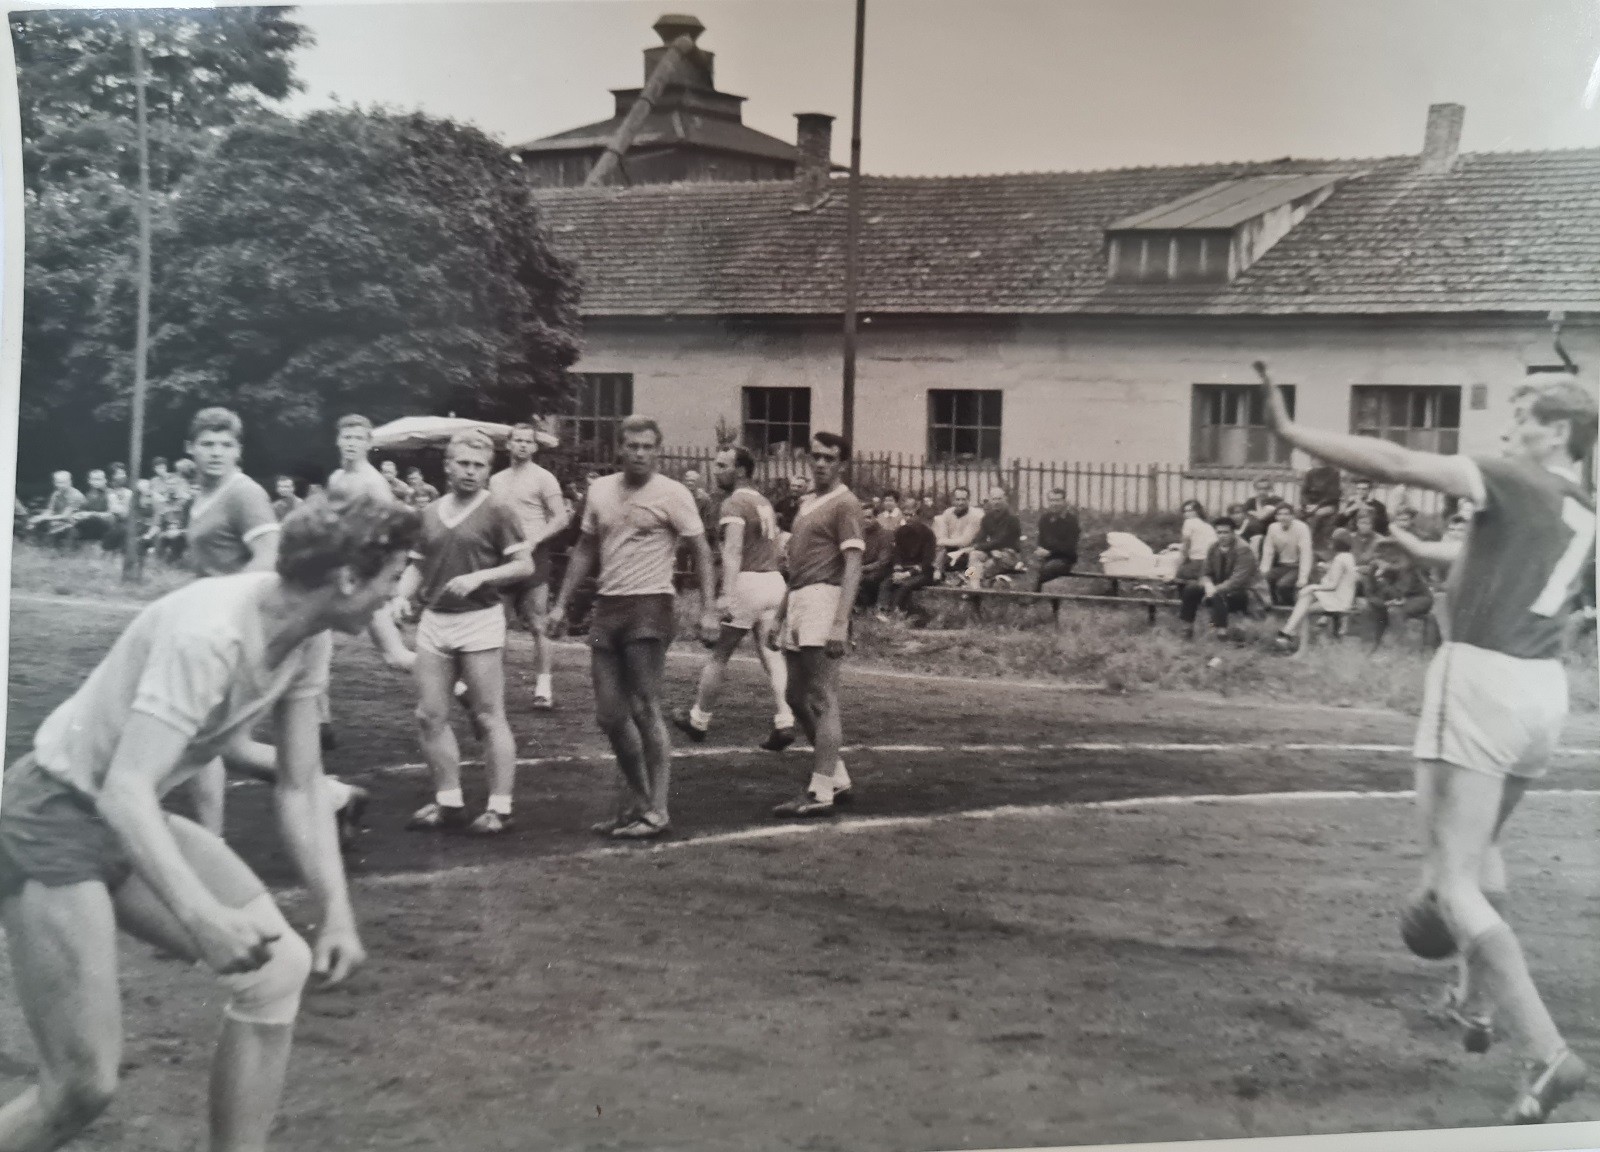 1964, II.liga na hřišti v Bělé. V dresu s límečkem zprava: Müller, Antoš, K.Urban, Z.Čtvrtník